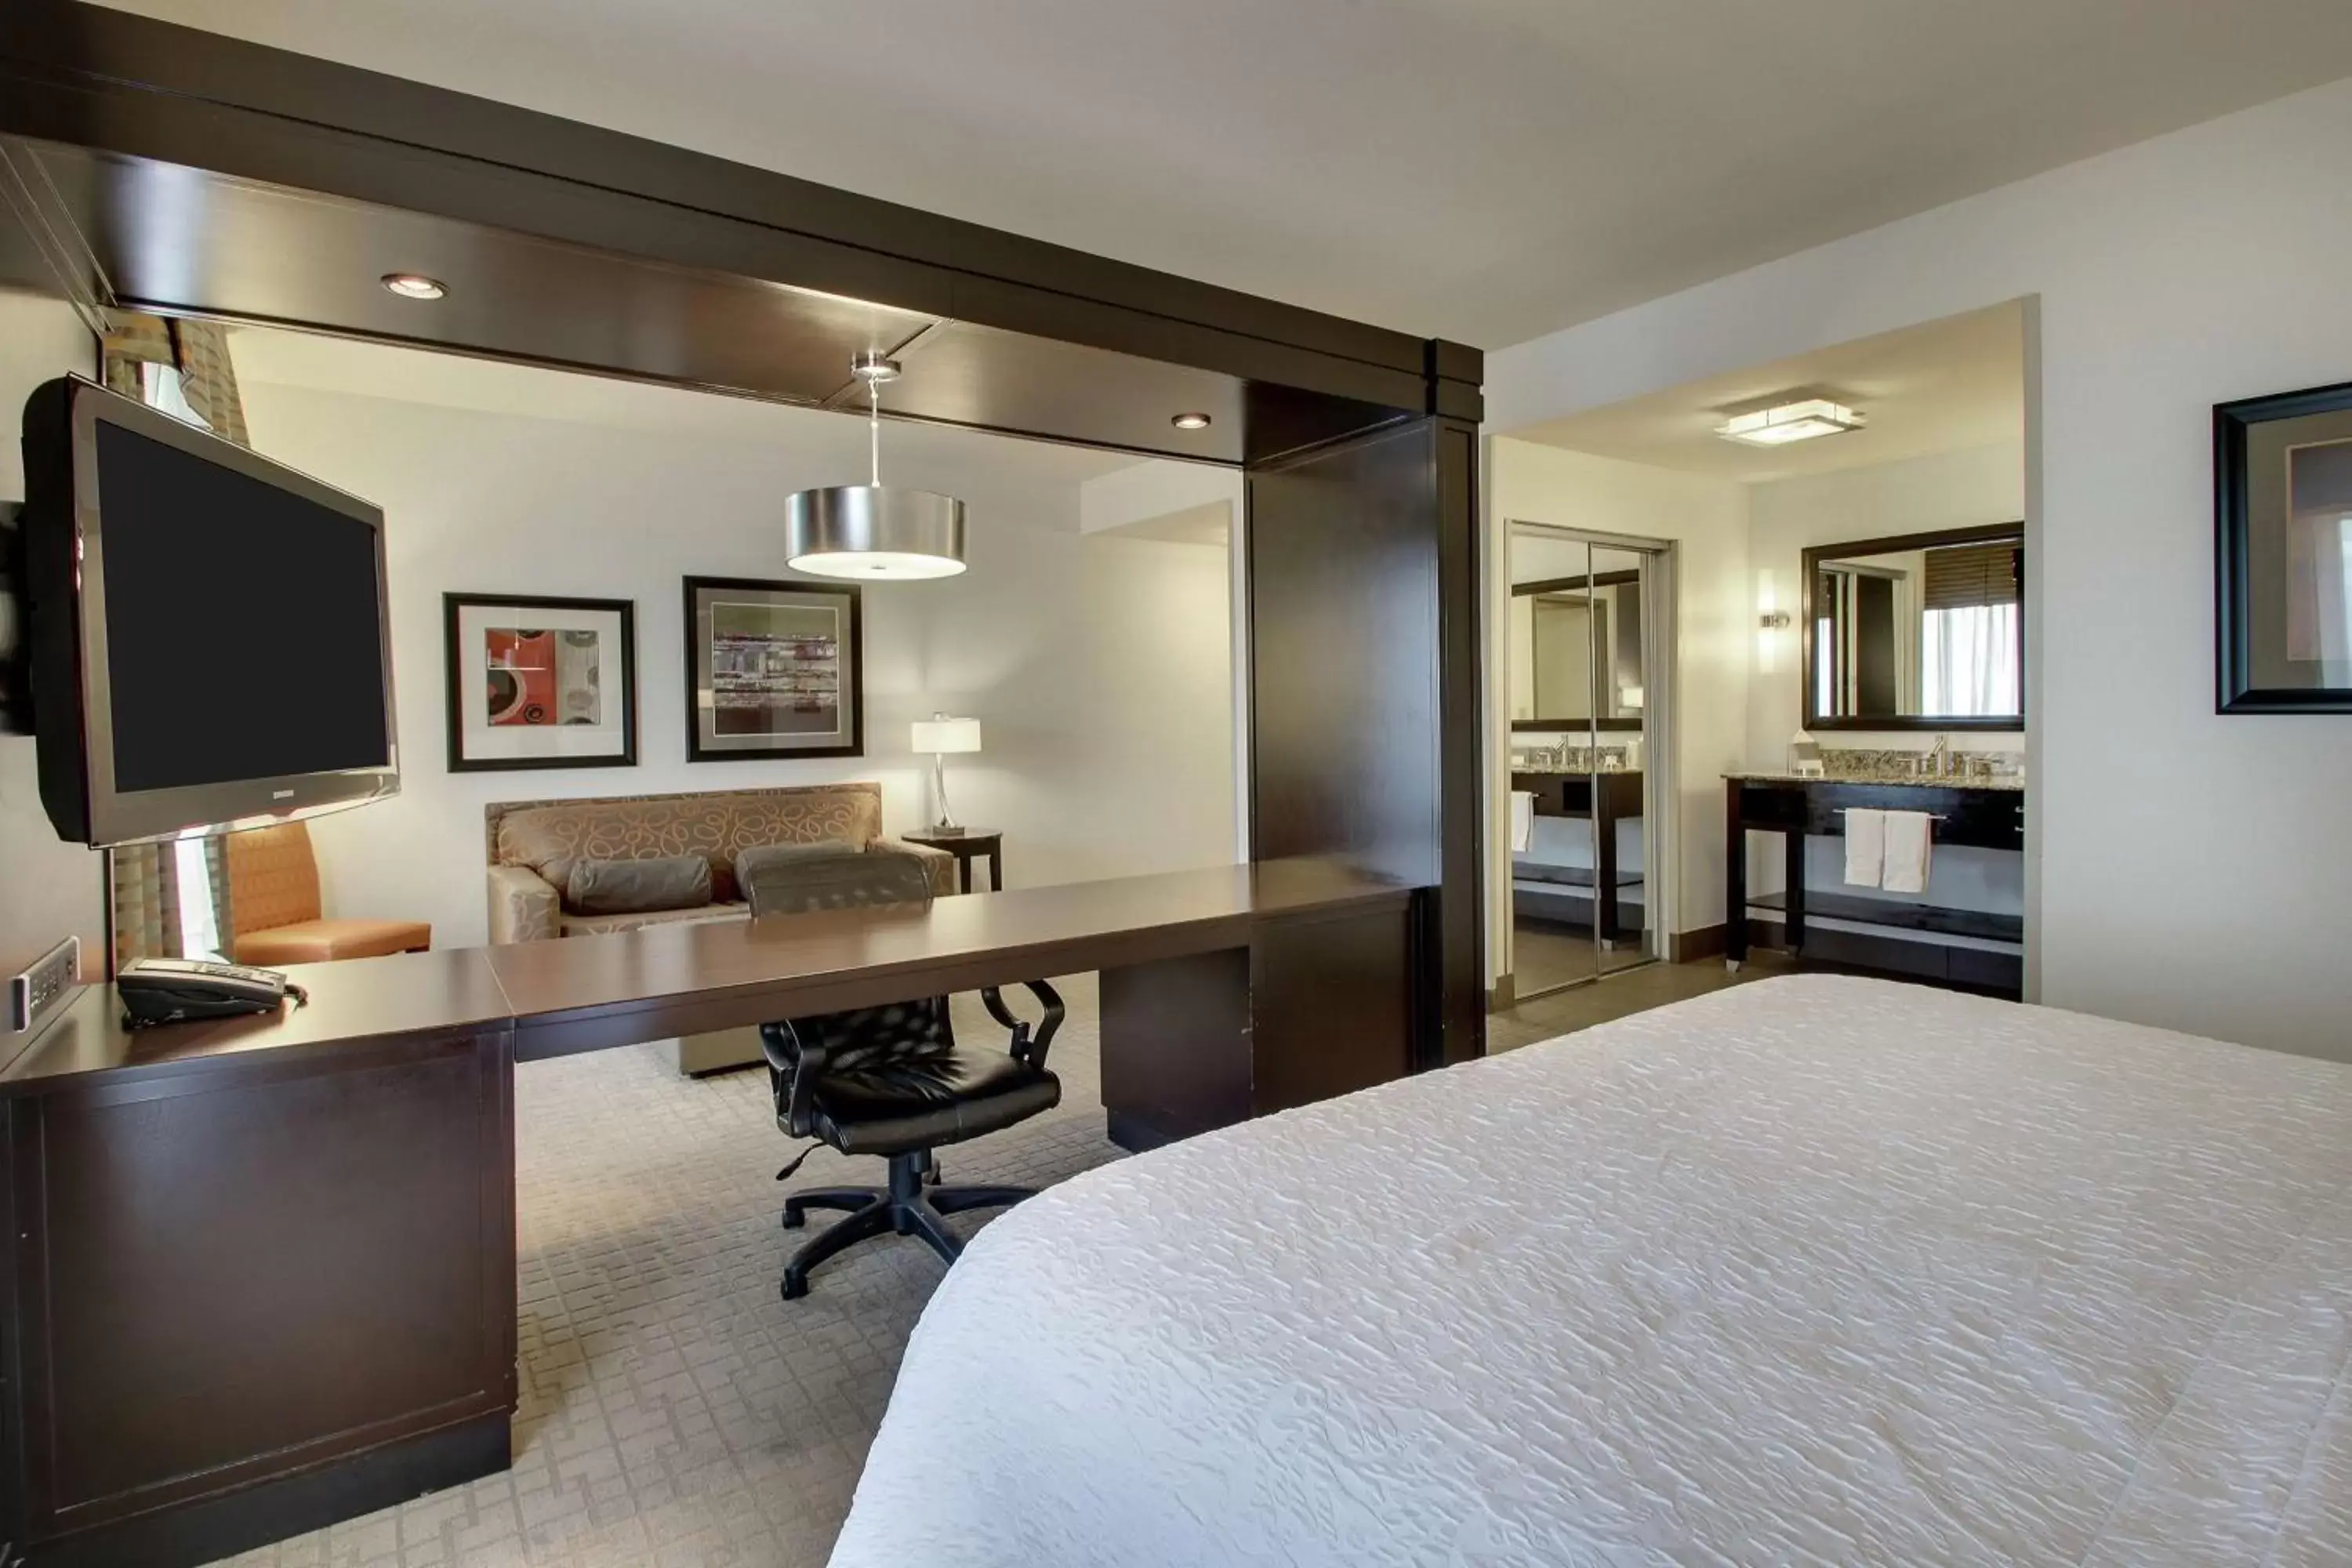 Bedroom, TV/Entertainment Center in Hampton Inn & Suites Shreveport